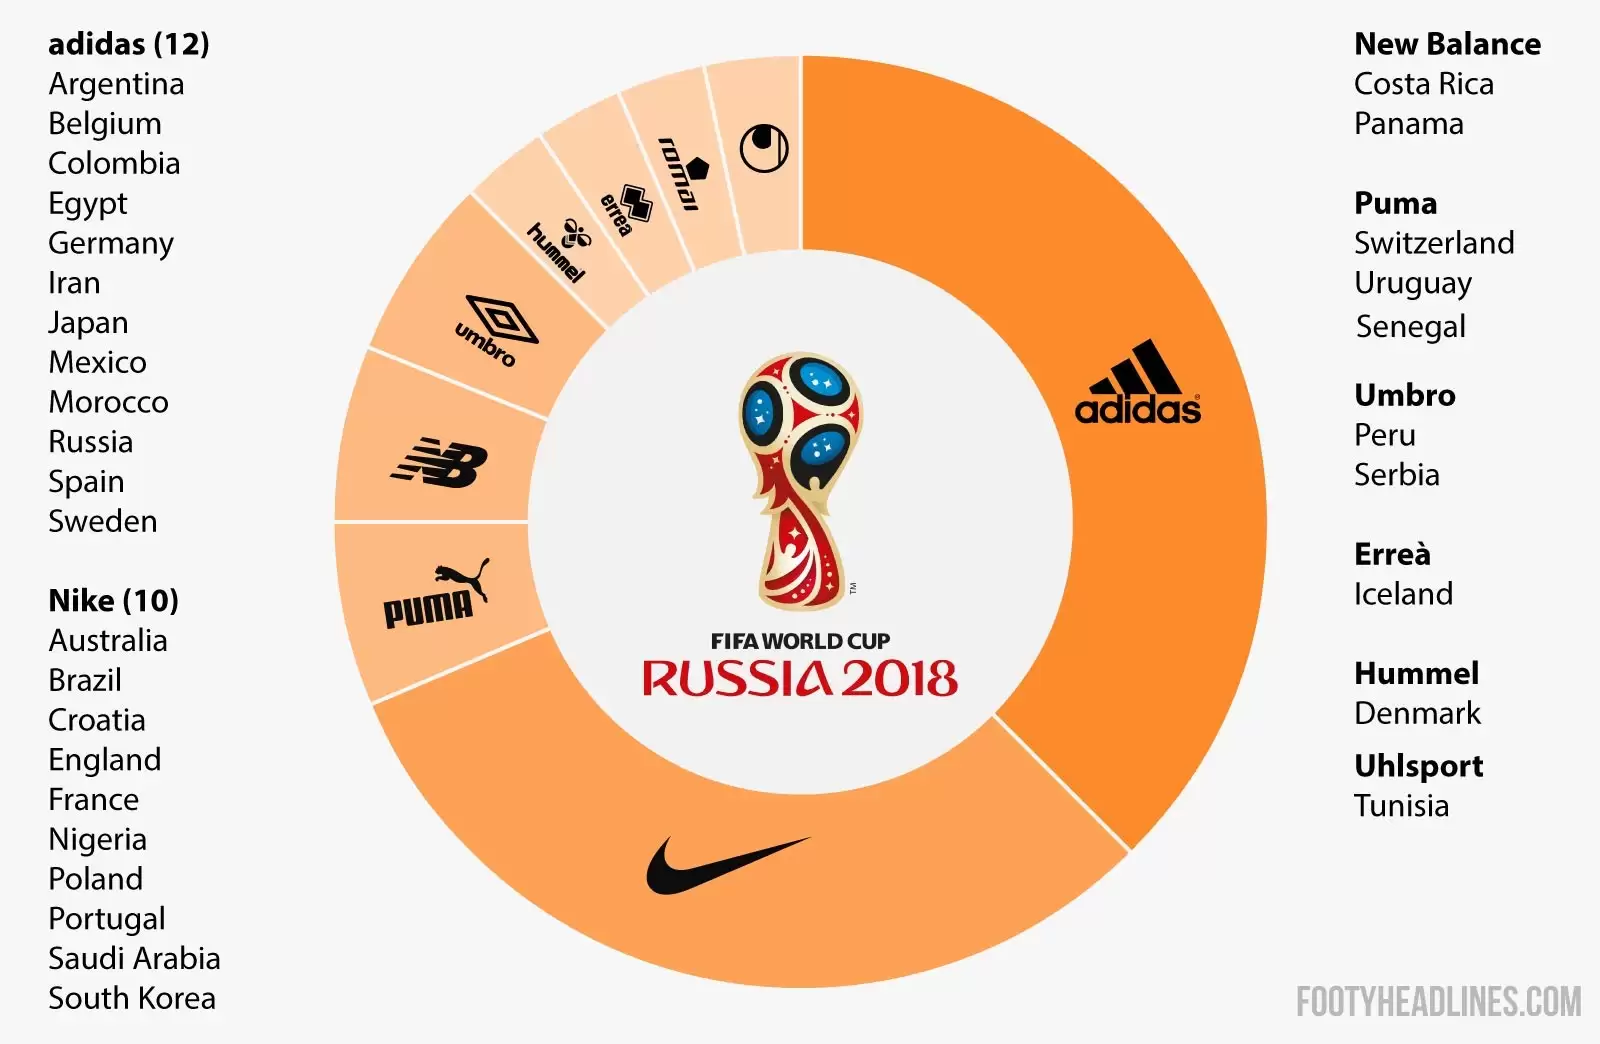 adidas a la cabeza, estas son las marcas que se quedarán el Mundial de Rusia | Marketing Registrado